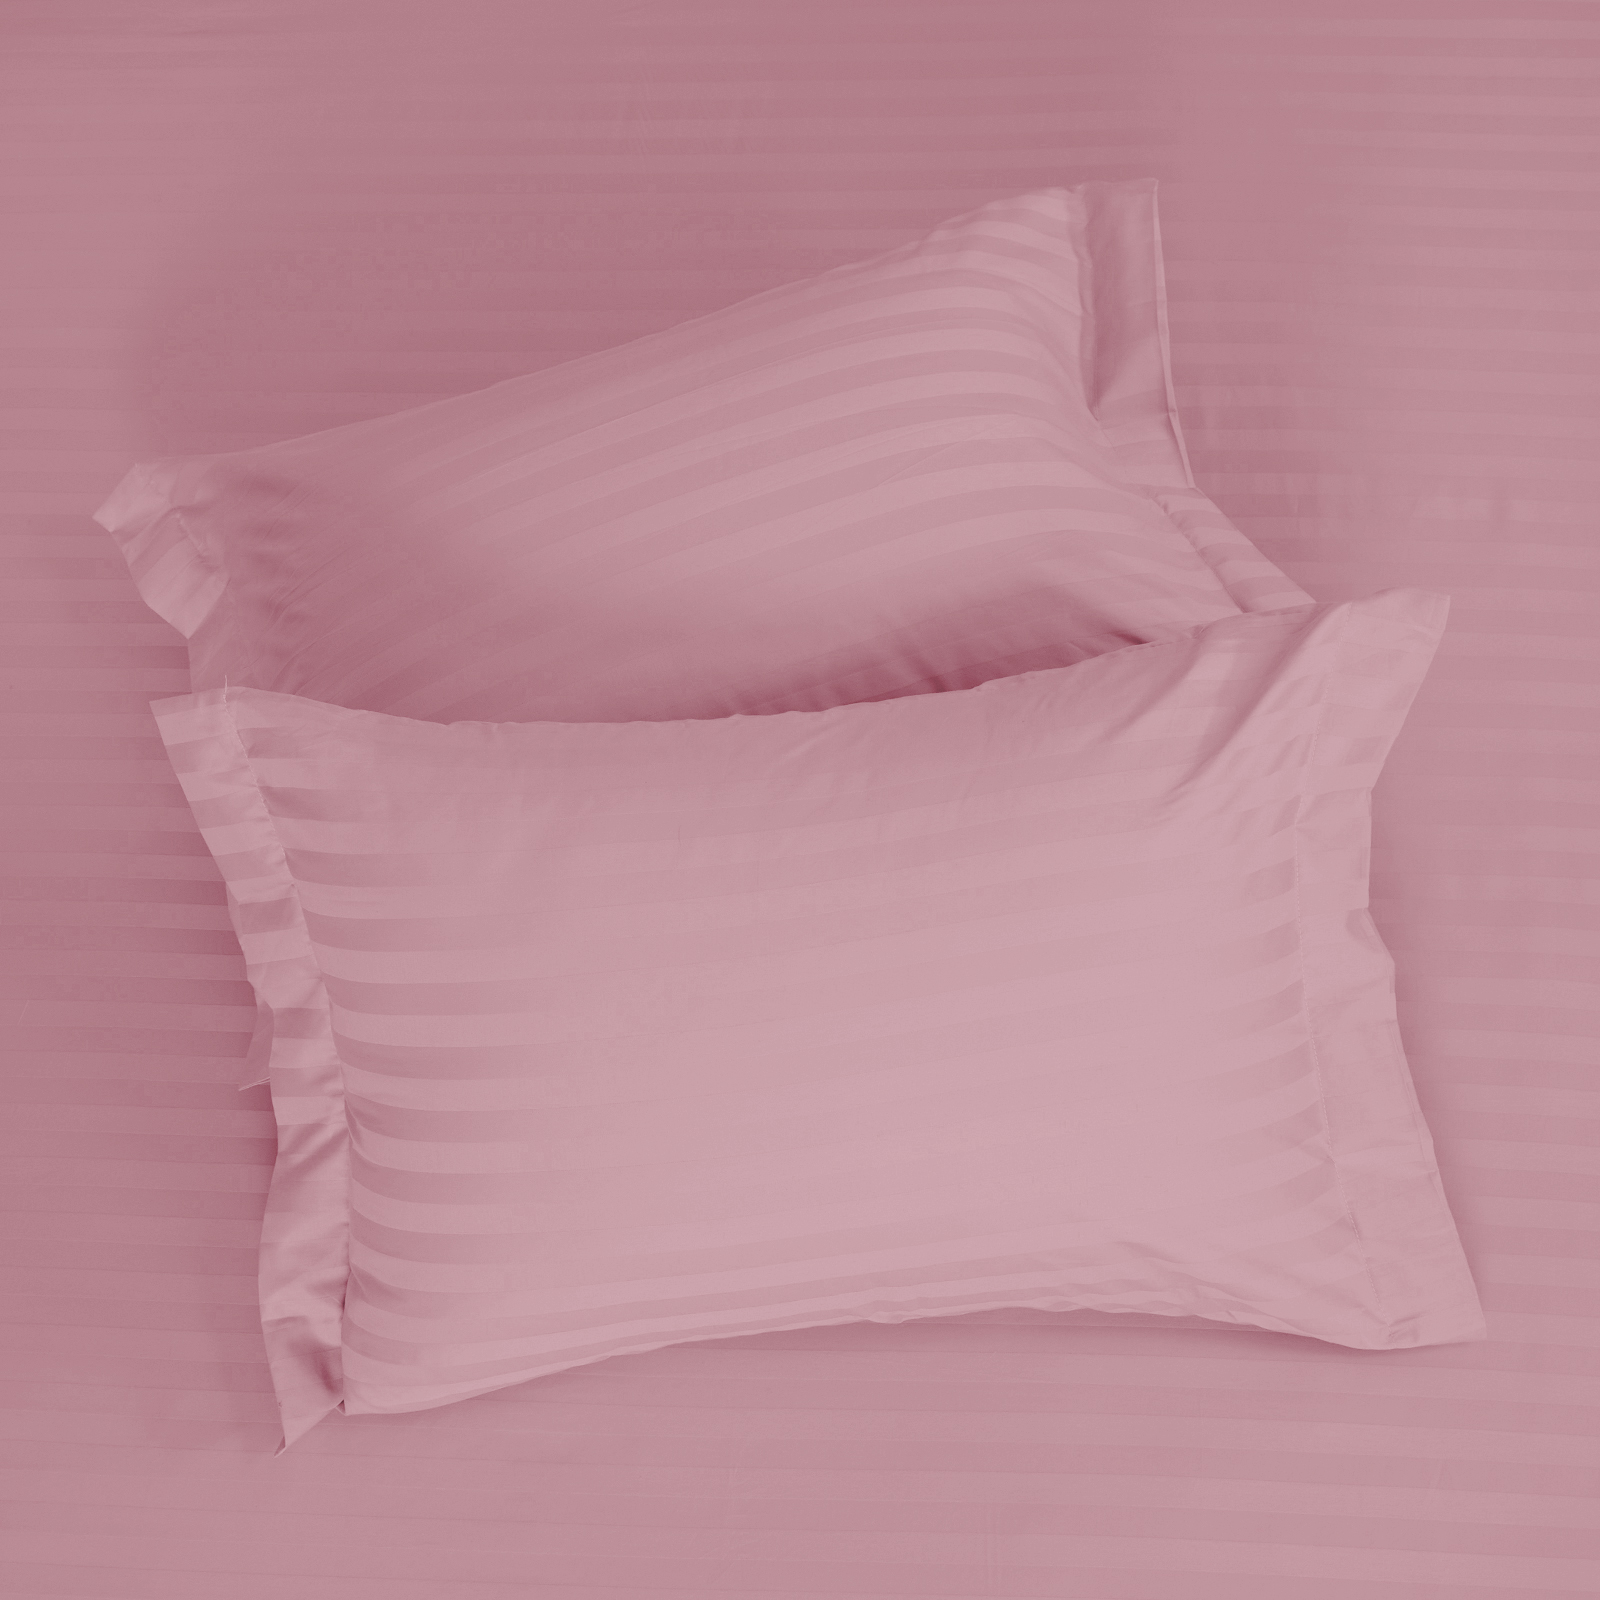 Комплект наволочек Soft pink с ушками